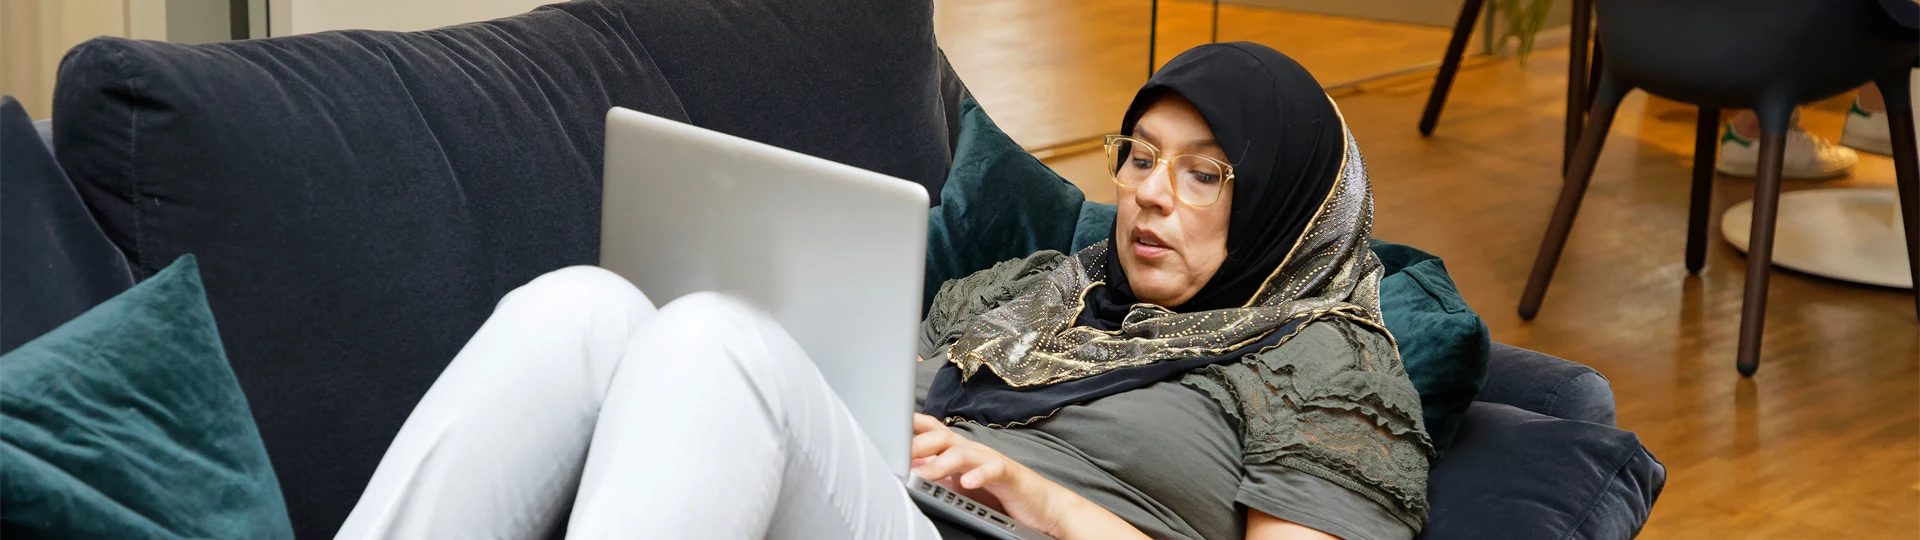 En person ligger i en soffa och arbetar med datorn.